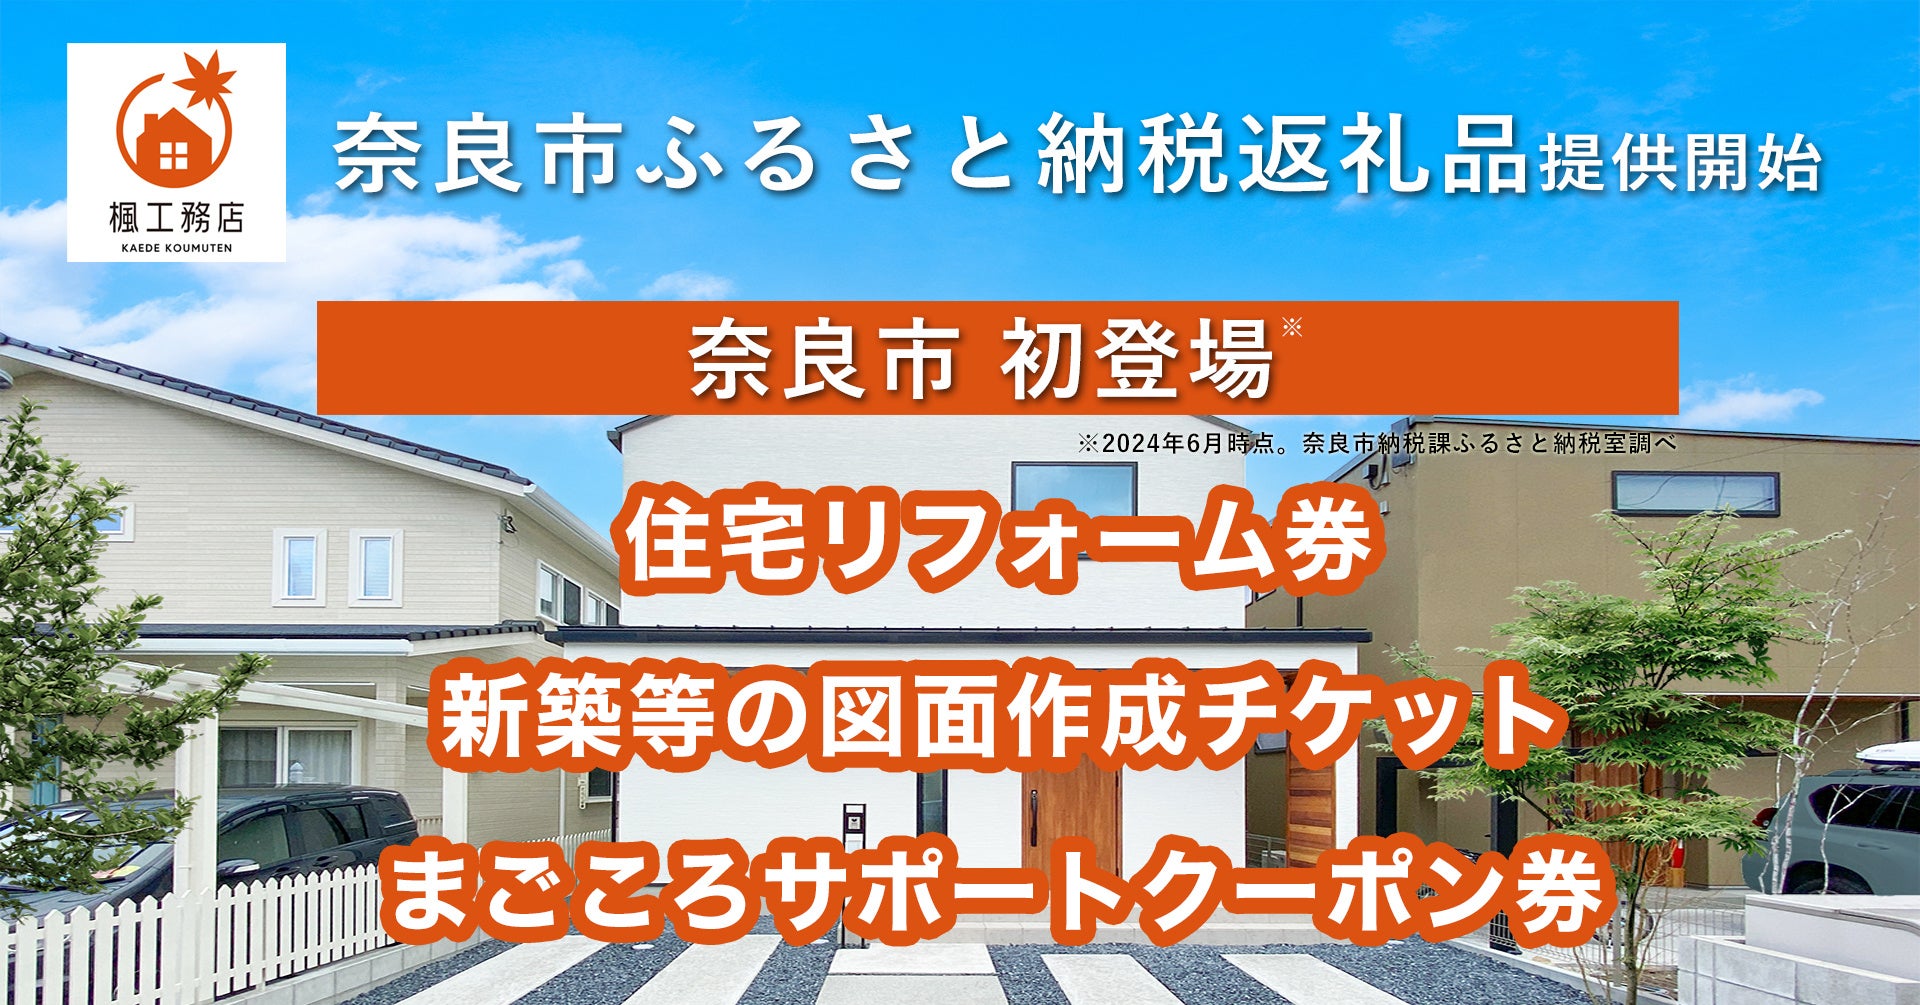 楓工務店、奈良市では初めてとなる「住宅リフォーム券」などのふるさと納税返礼品を提供開始